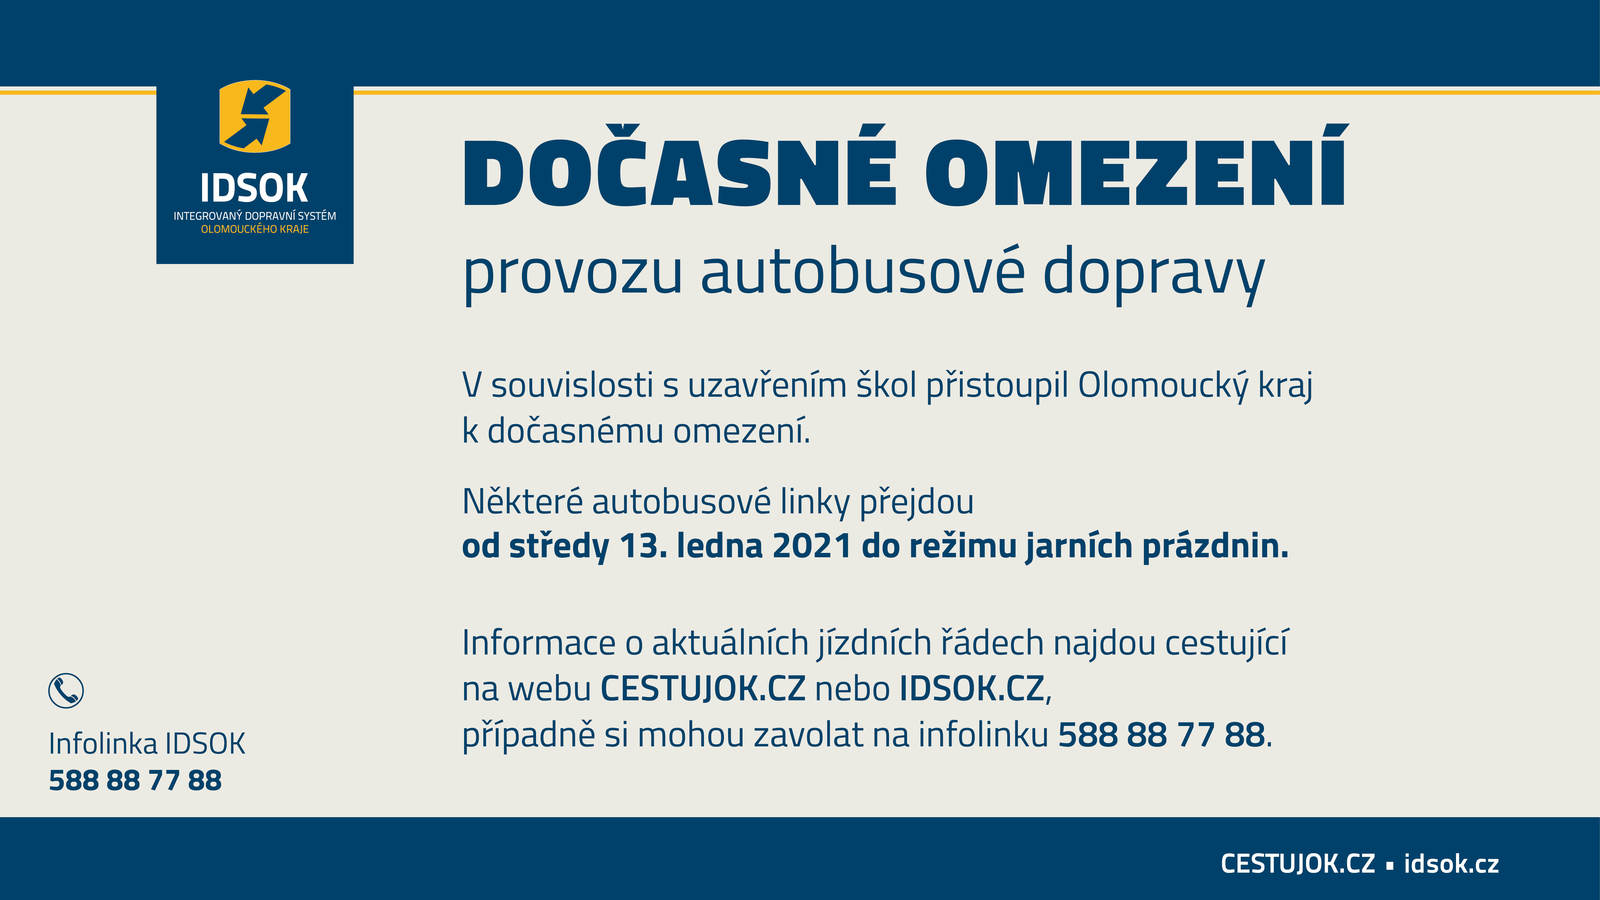 Olomoucký kraj dočasně omezuje autobusovou dopravu